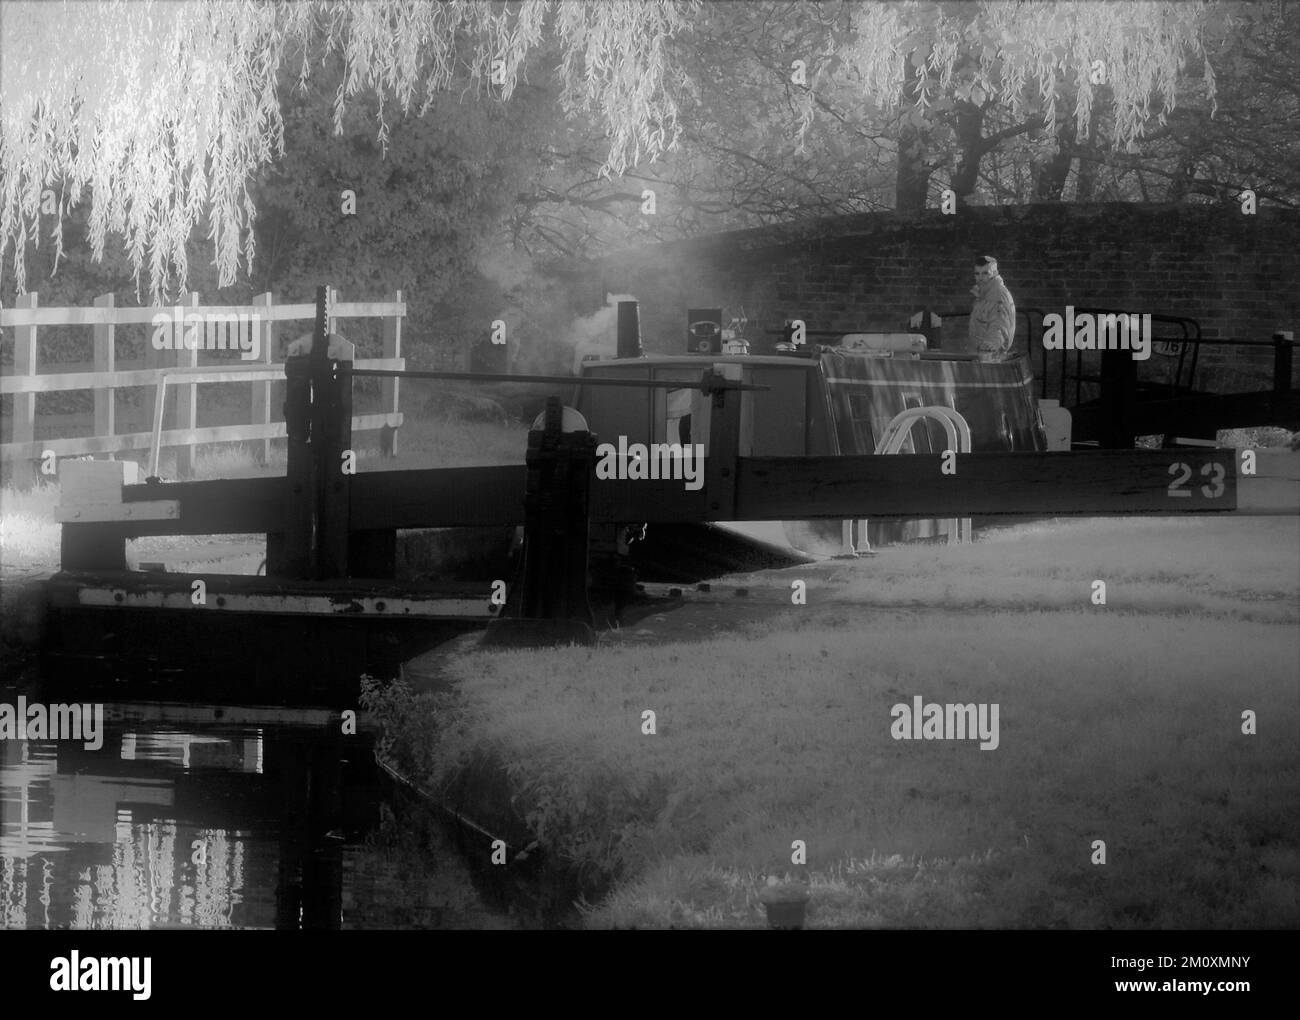 Sepia-Ton Schwarz-Weiß-Foto von Narrowbooten auf den Wasserstraßen von Staffordshire, Sepia-Ton bringt einen veralteten und nostalgischen Blick auf die Szene. Stockfoto